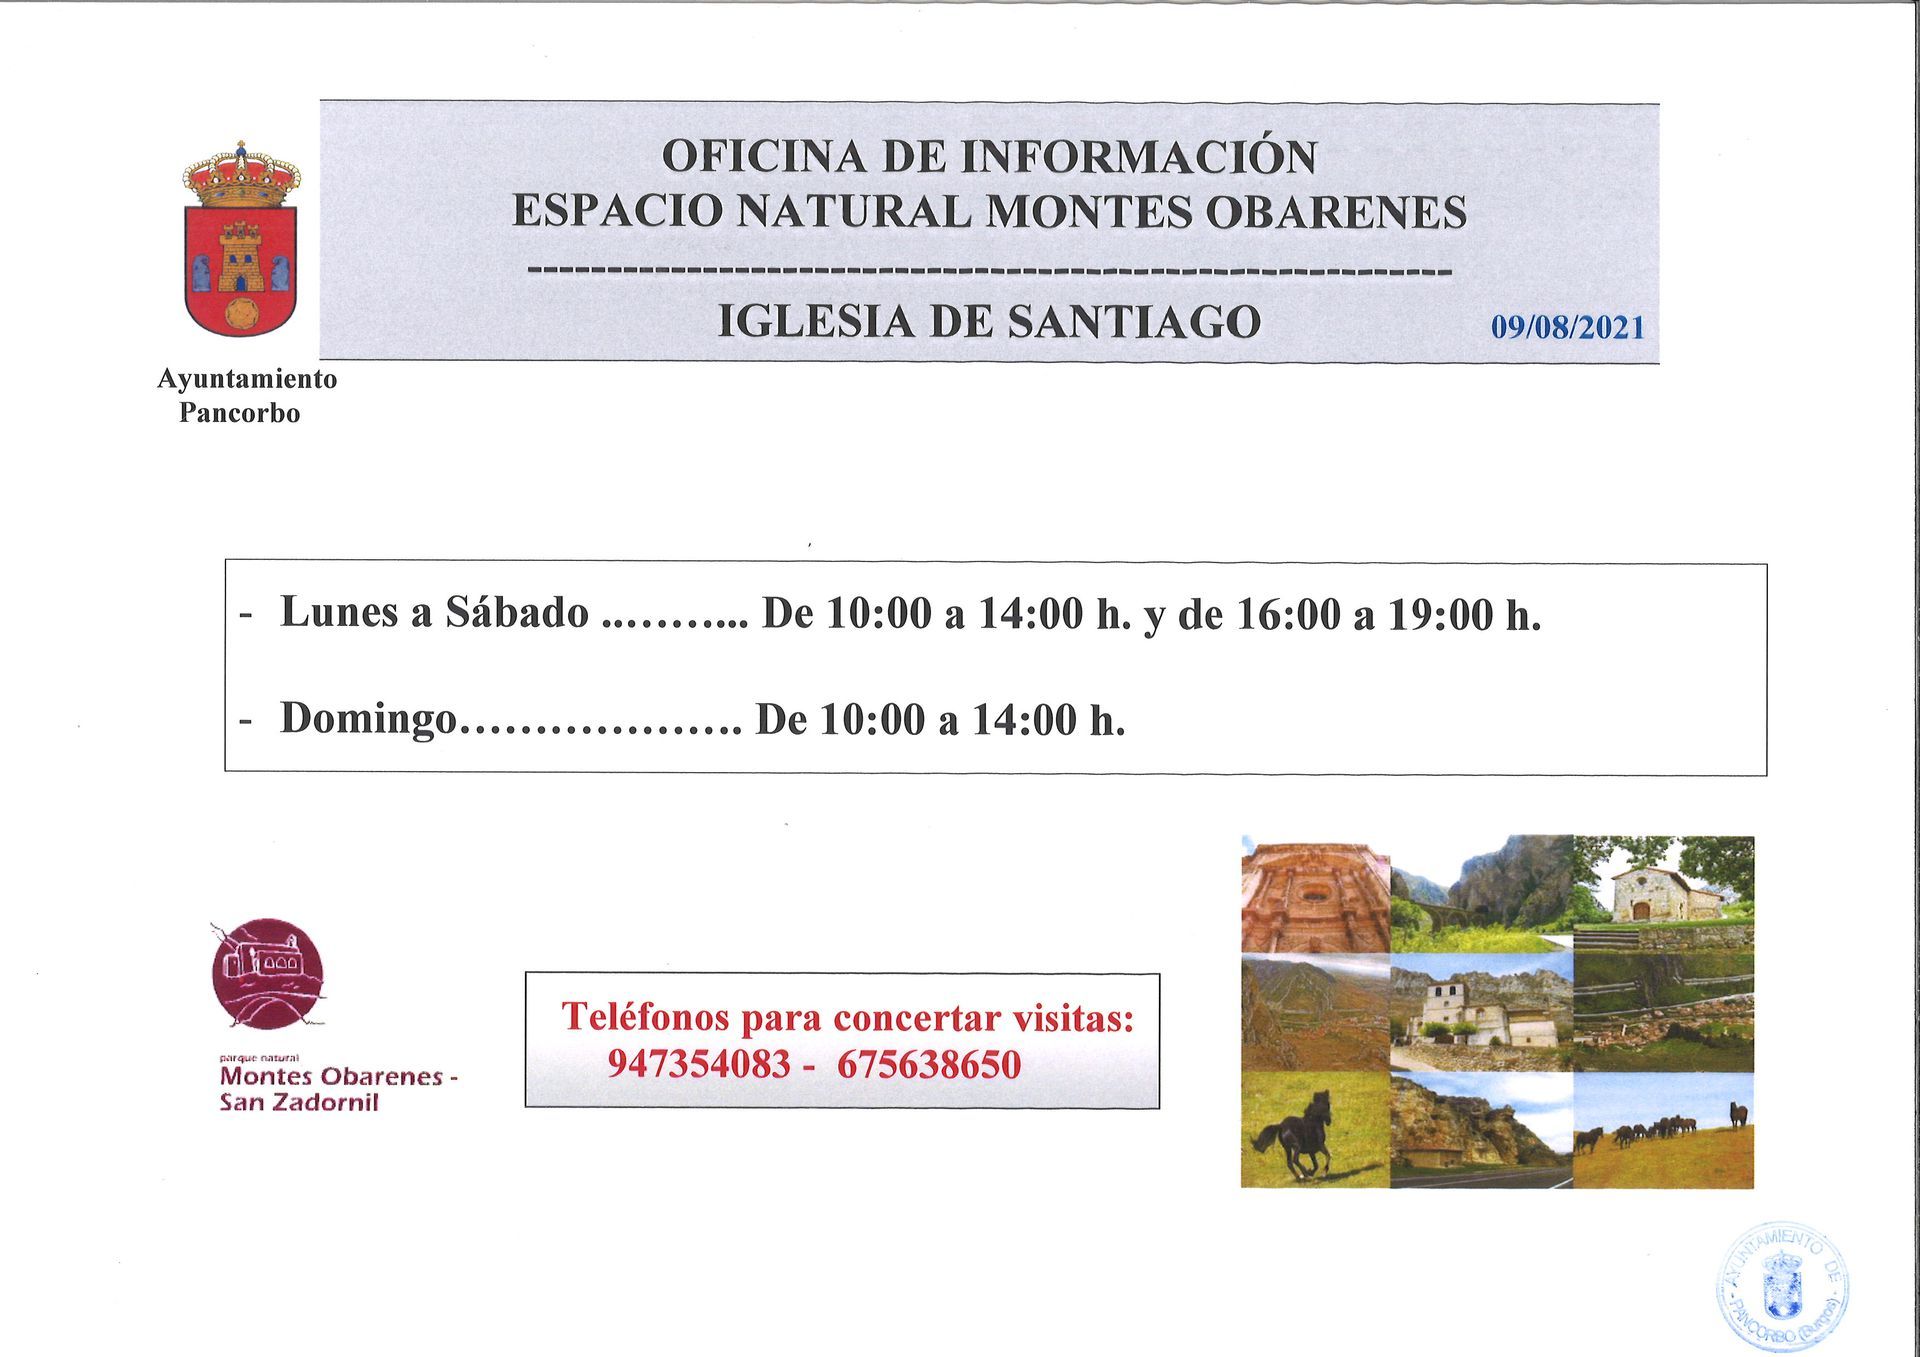 Horario Oficina de Información del Espacio Natural Montes Obarenes e Iglesia de Santiago